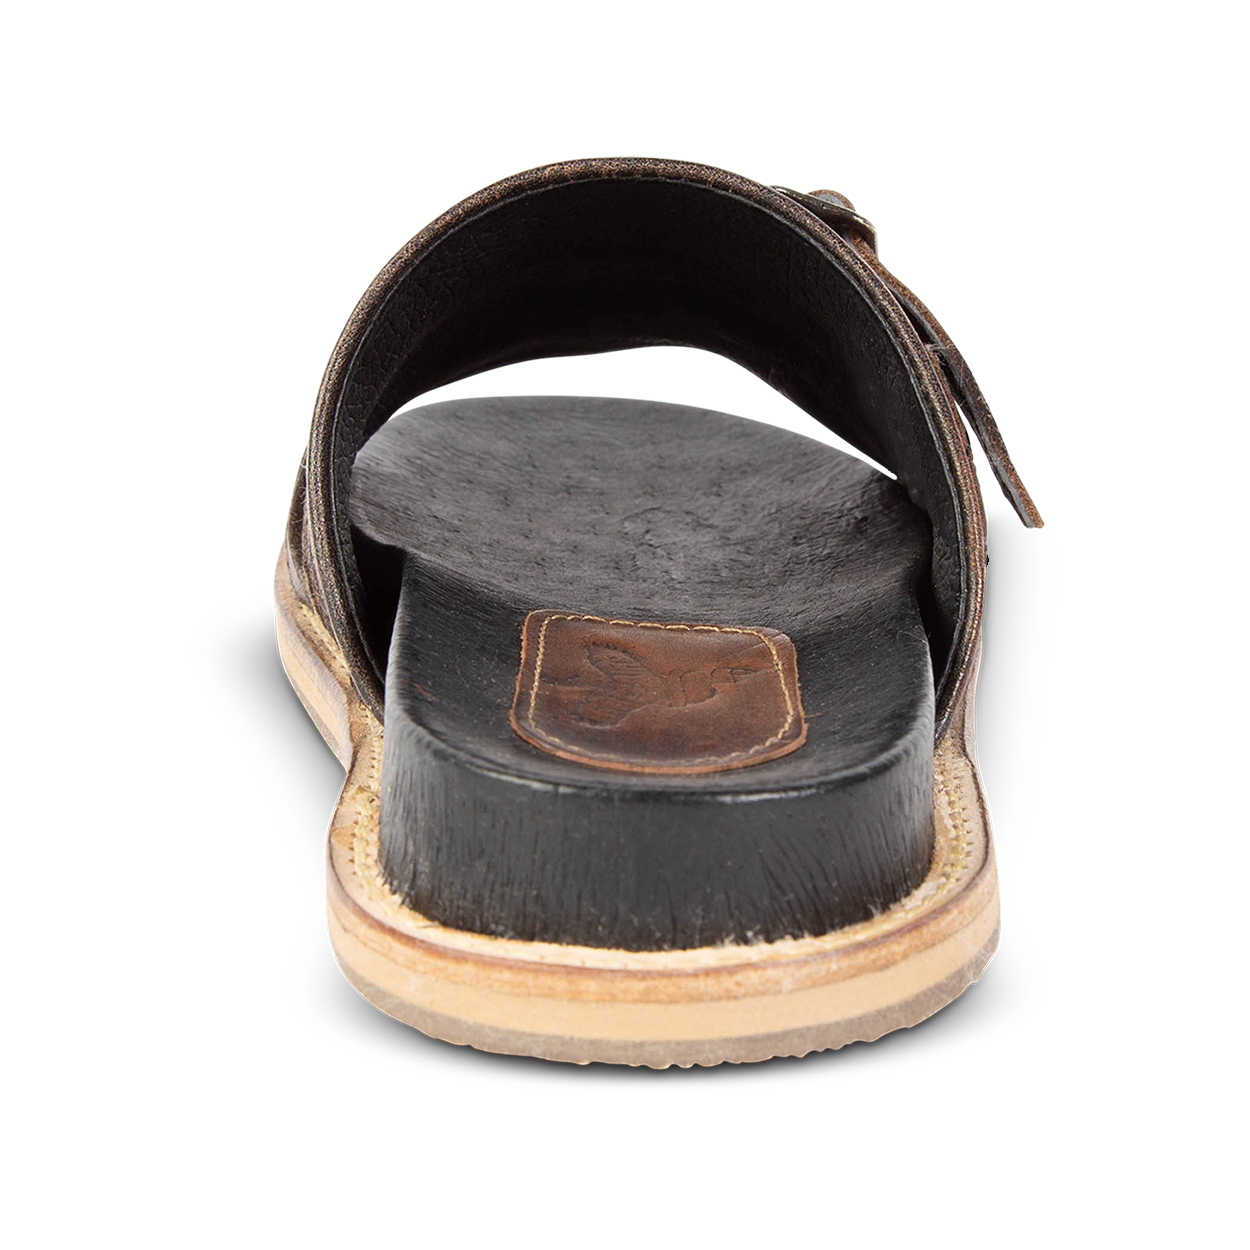 Back view showing FREEBIRD heel on women's Fleetwood black flat slip-on sandal